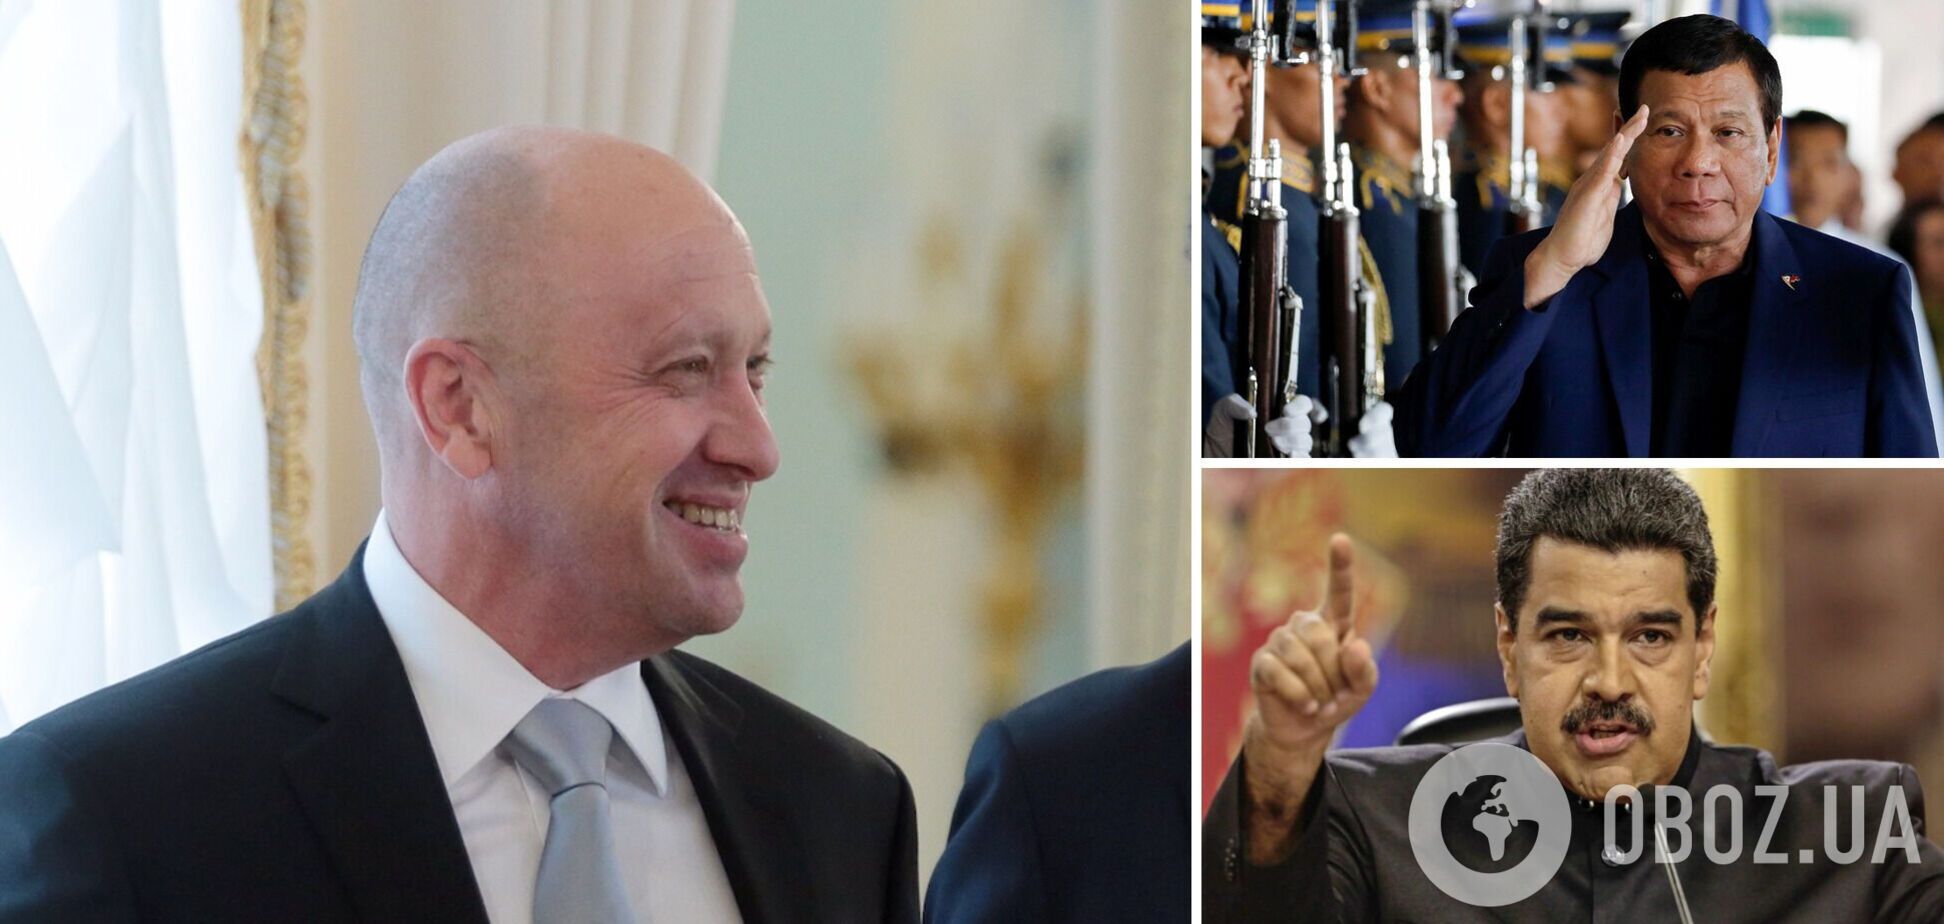 'Кухар Путіна' Пригожин отримав звання 'Корупціонер року': раніше премію отримували Мадуро, Дутерте та Путін